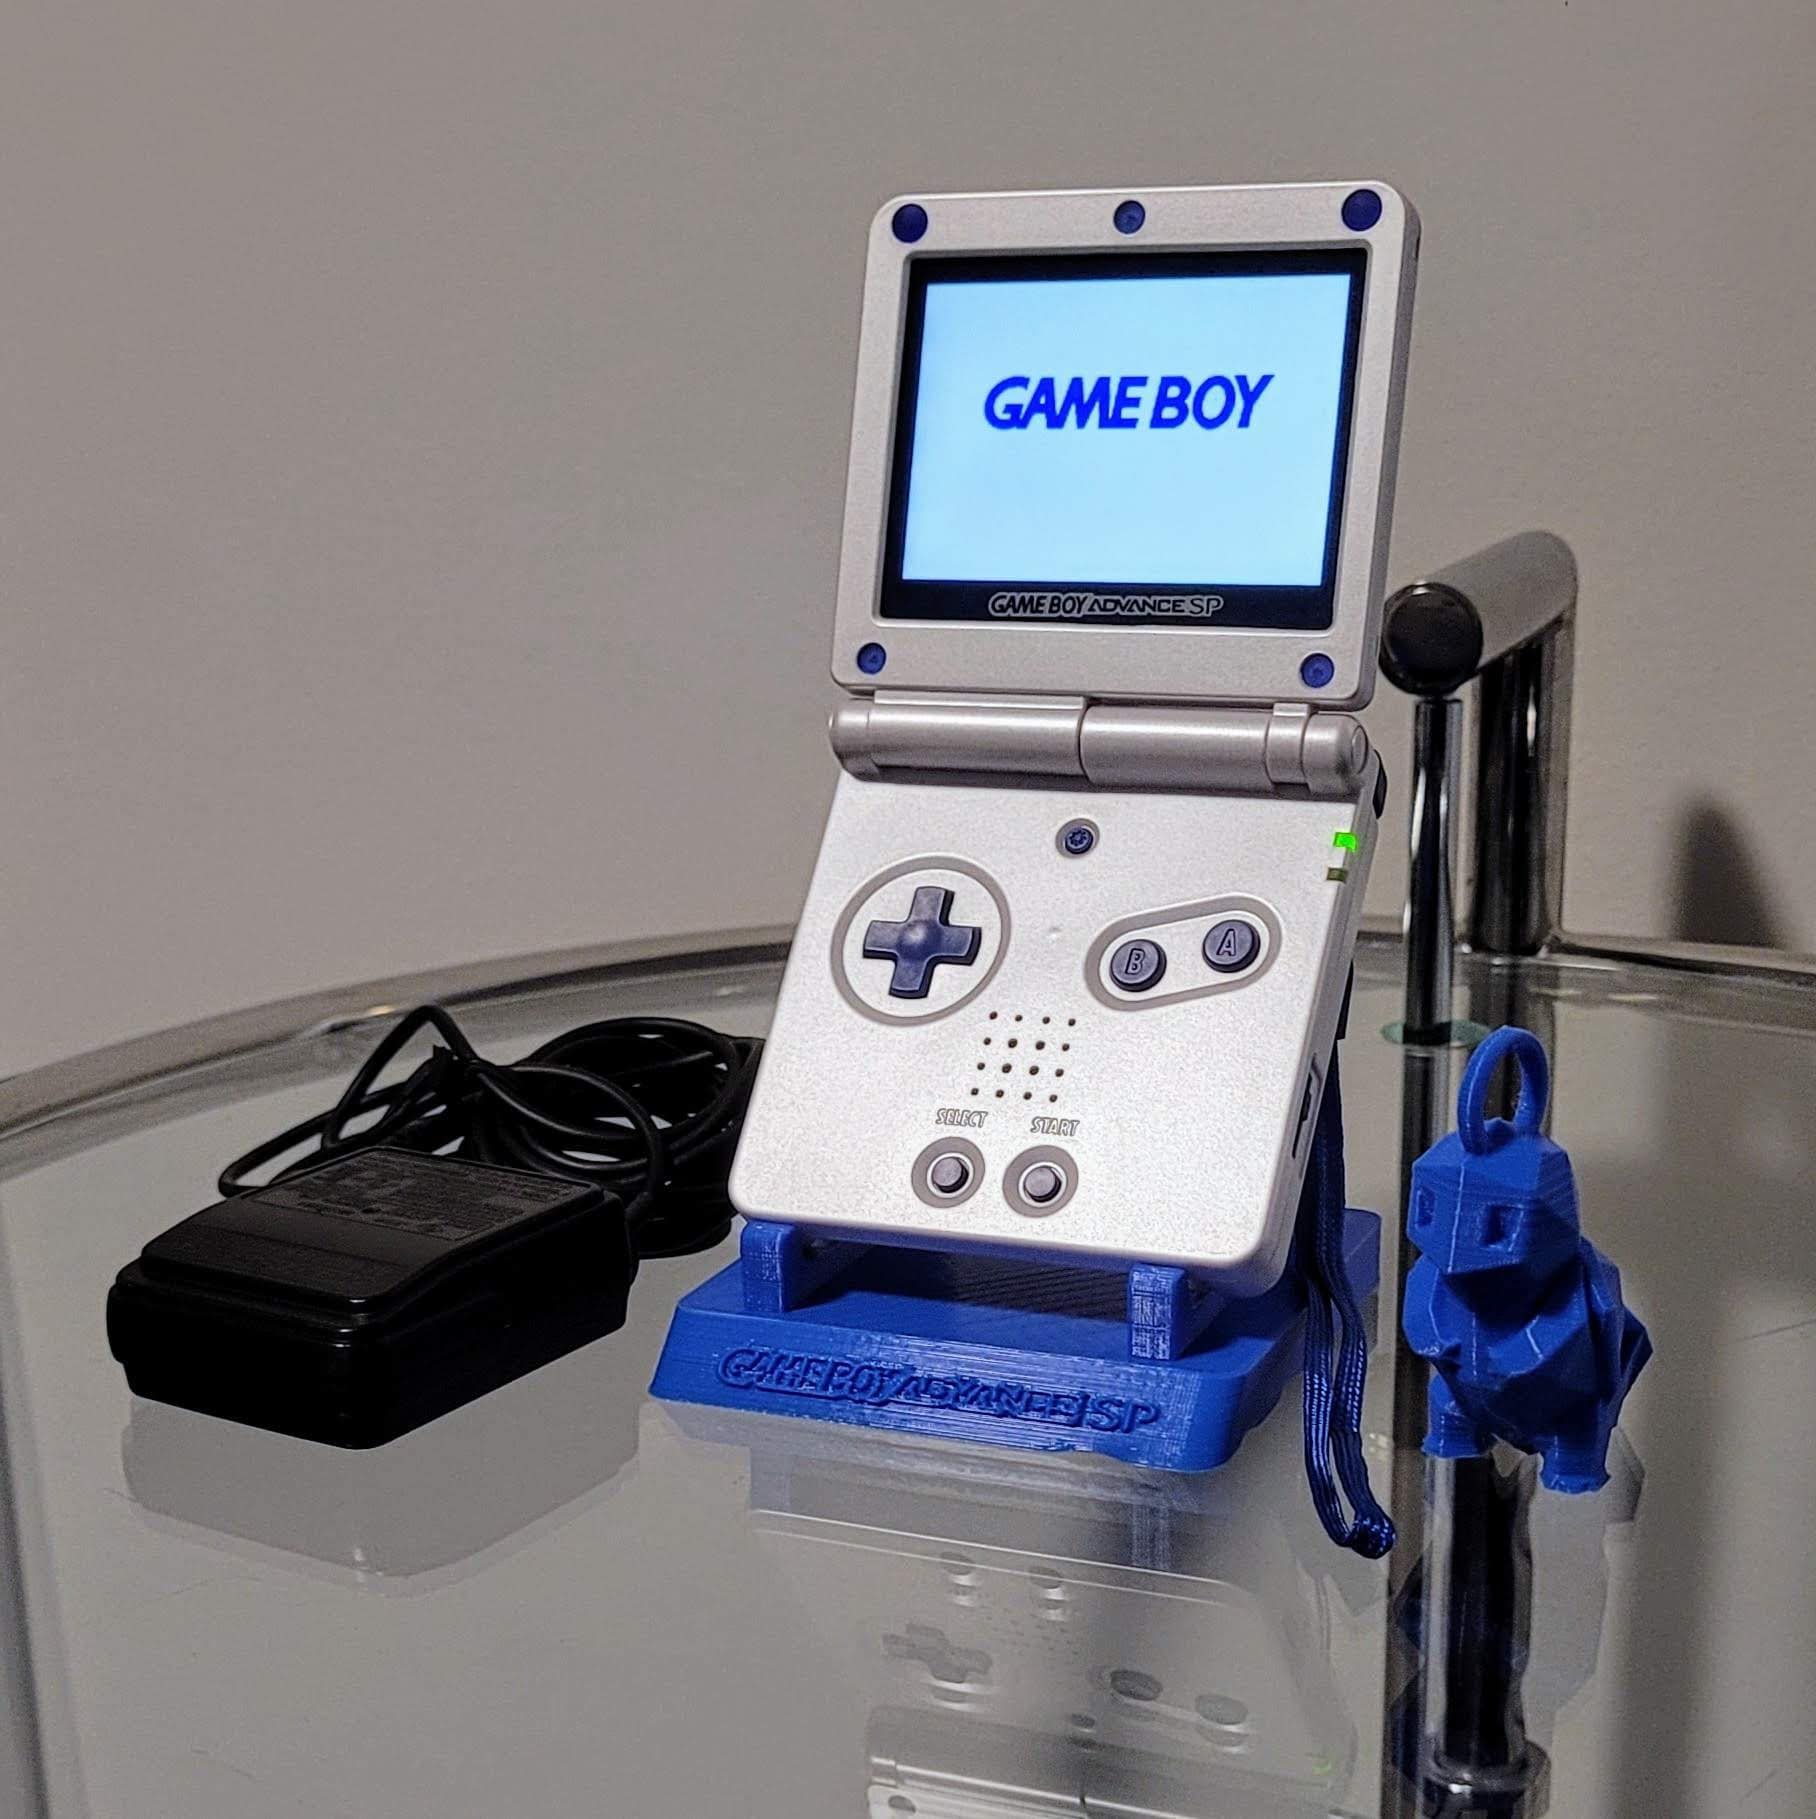 Console Game Boy Advance SP - Prix - Photo - Présentation